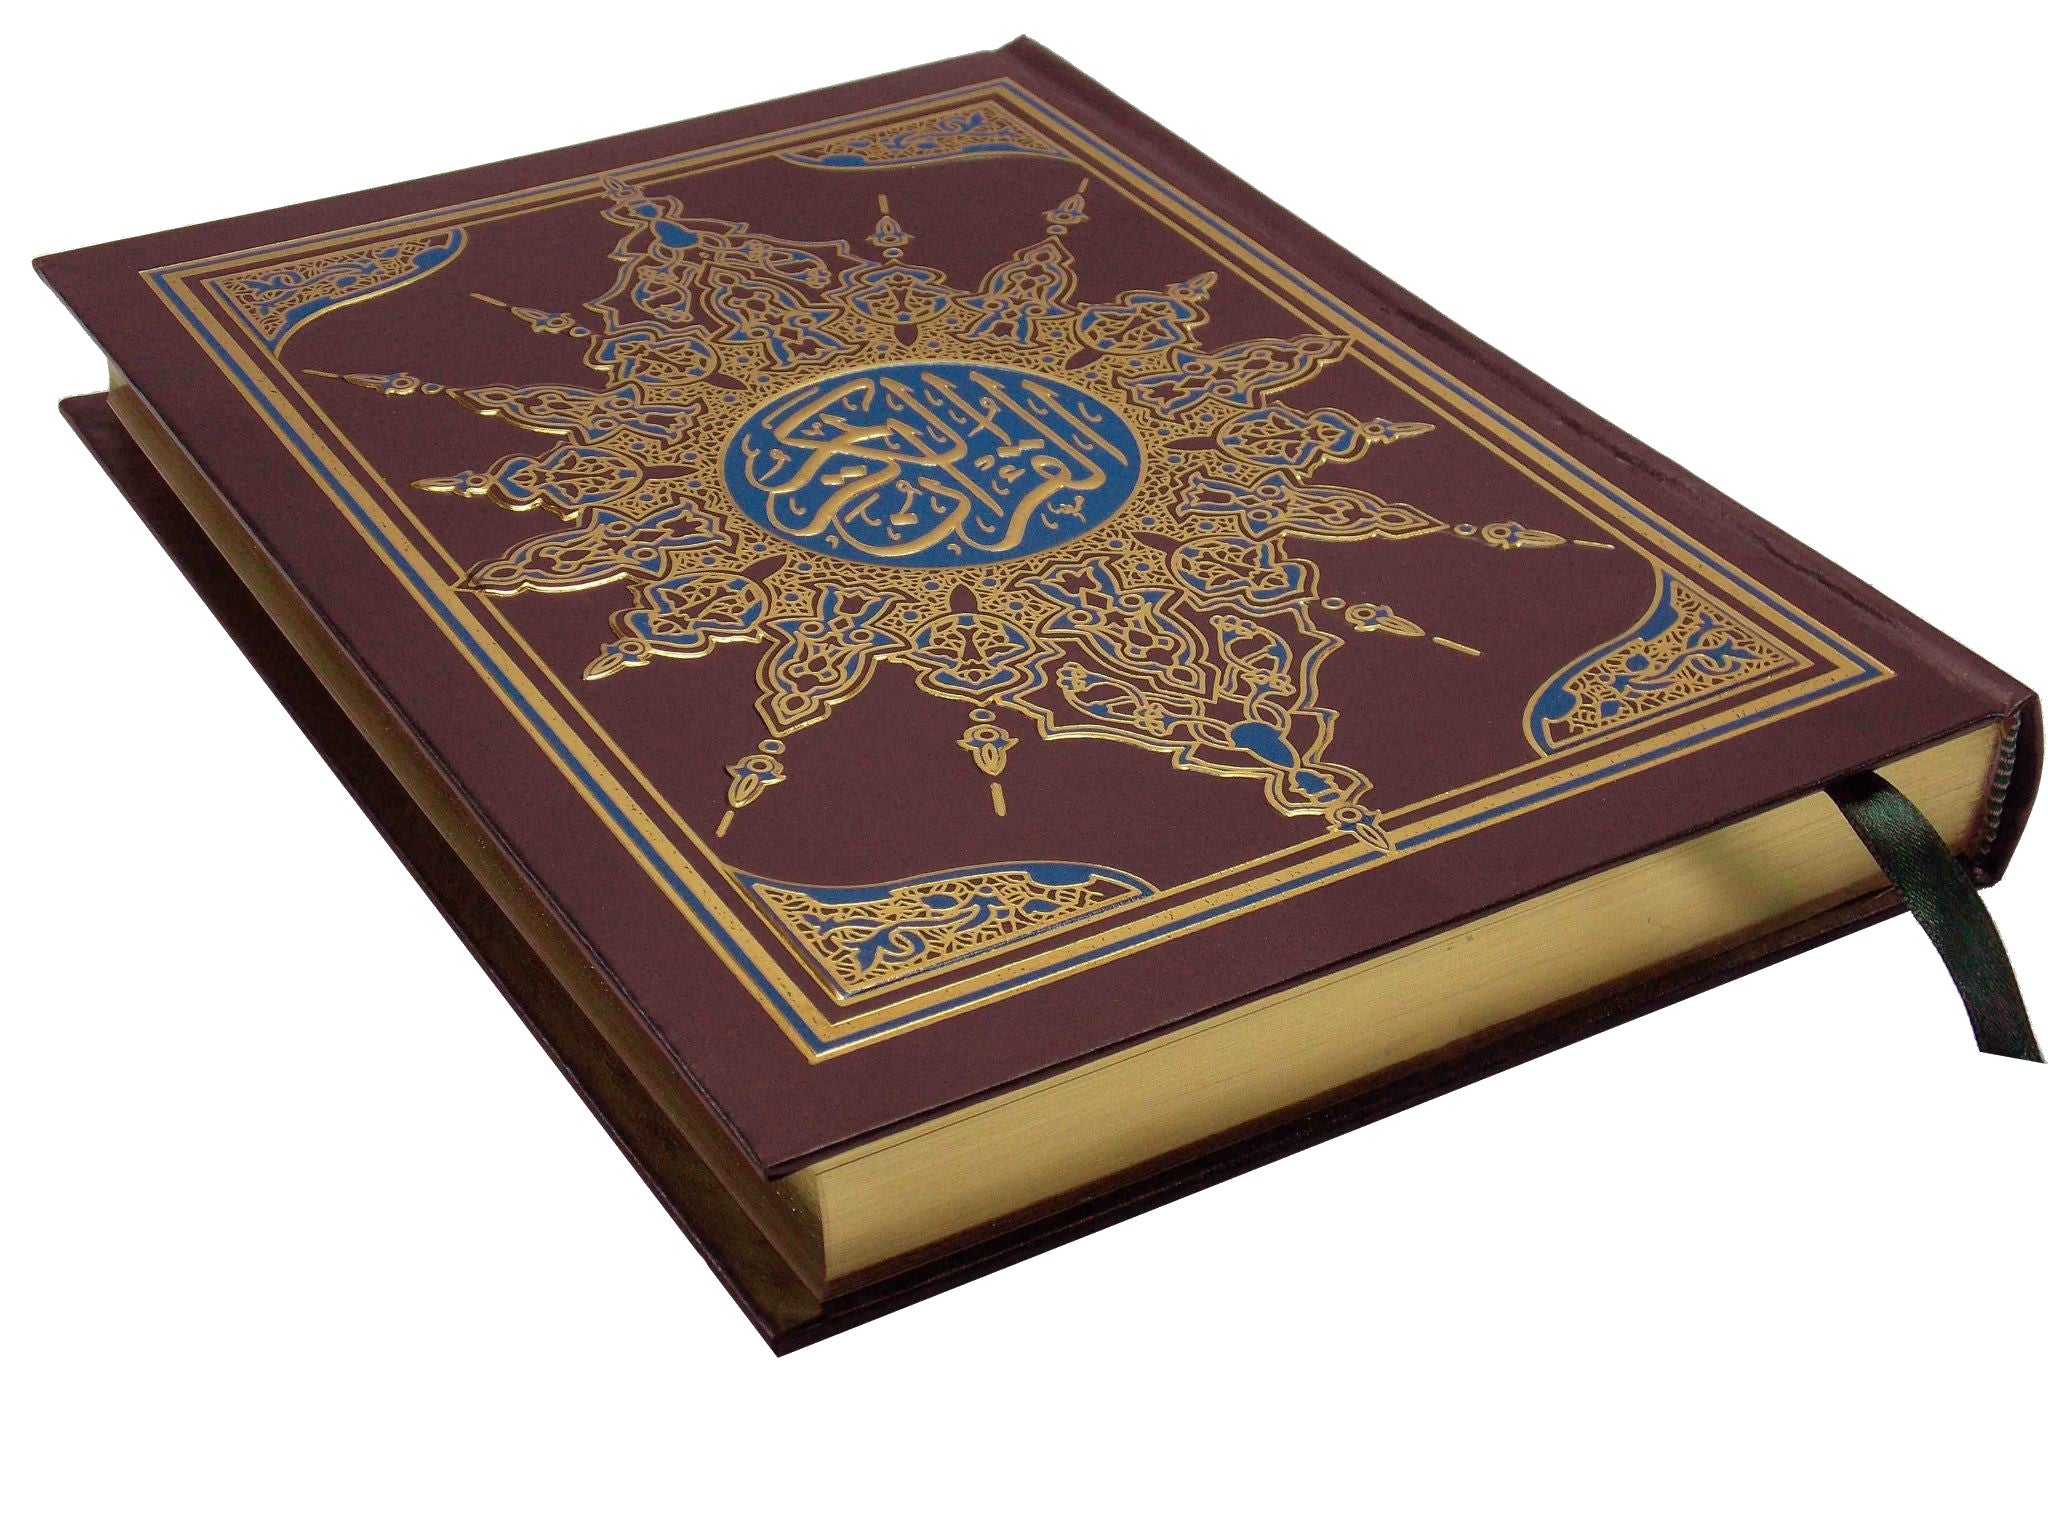 القرآن الكريم بالرسم العثماني كتب إسلامية السحار للطباعة